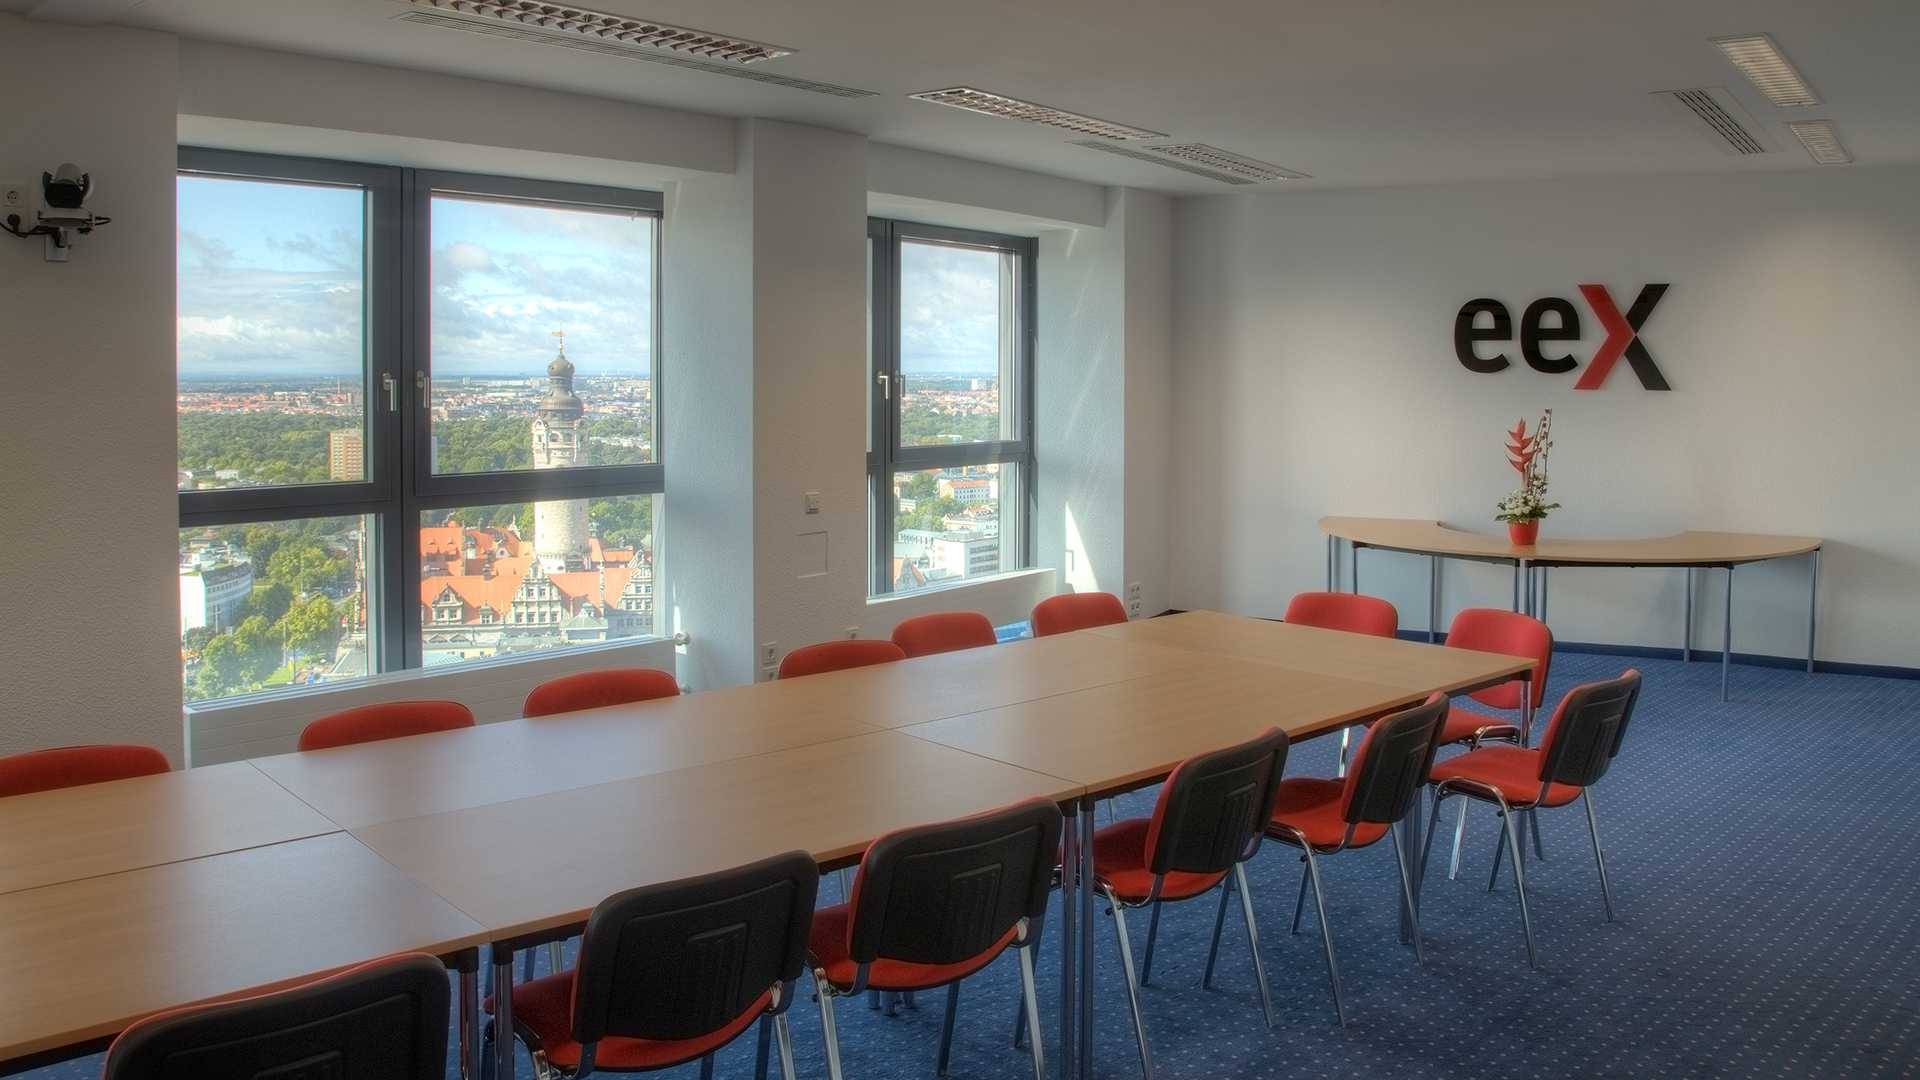 Besprechungsraum der EEX im City Hochhaus Leipzig